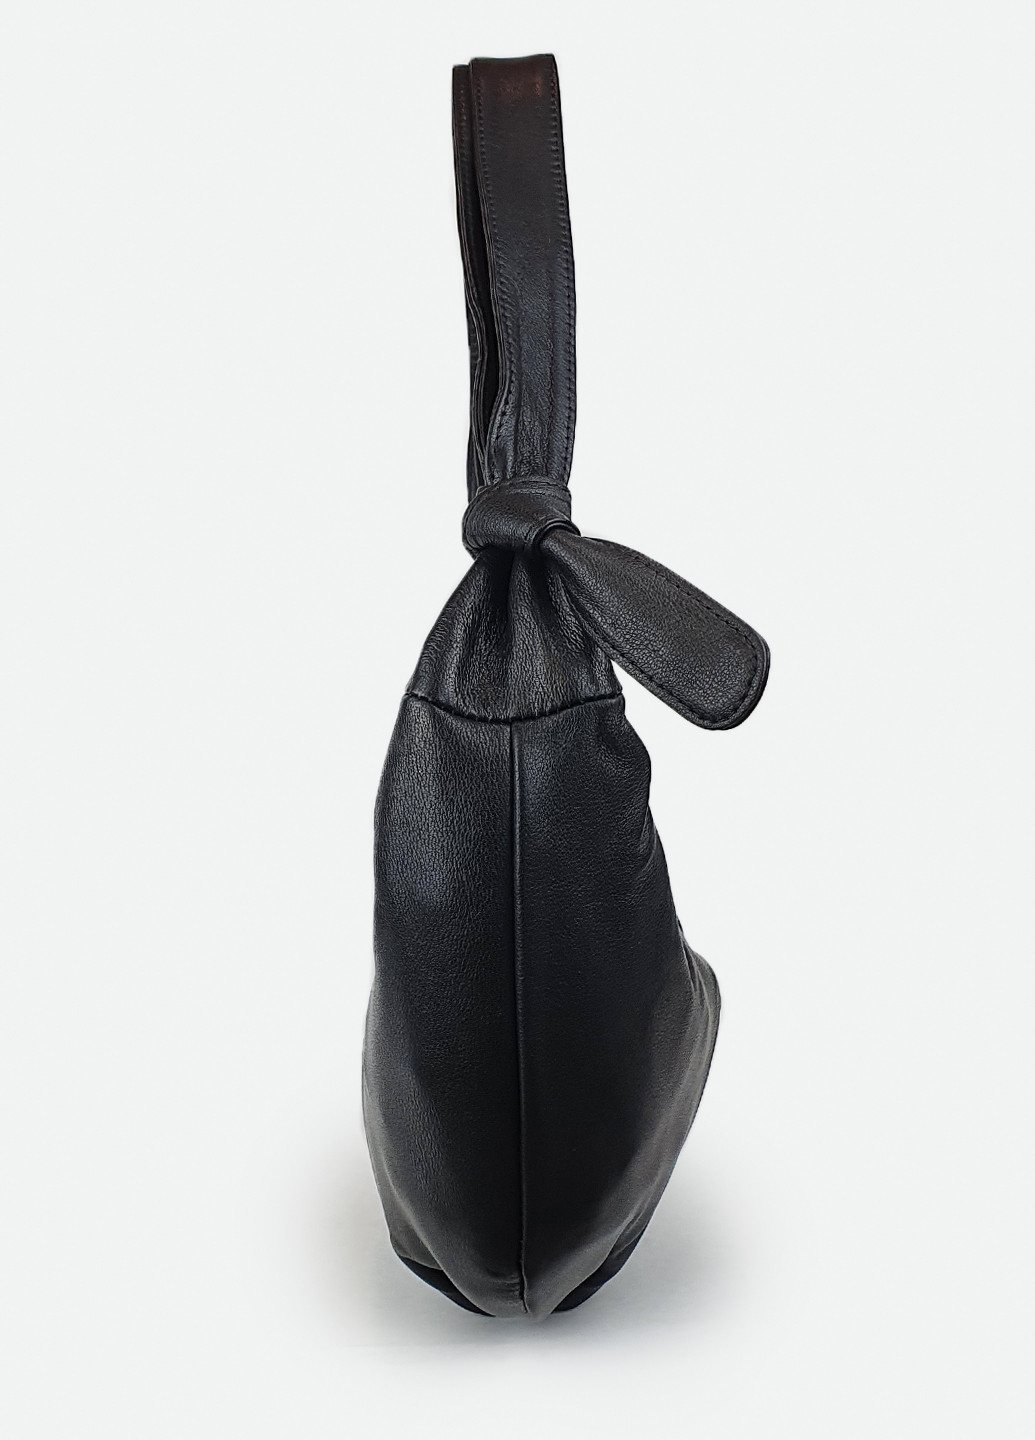 Женская сумка стильная черная кожаная, сумка-луна, бананка на грудь Fashion (229461517)